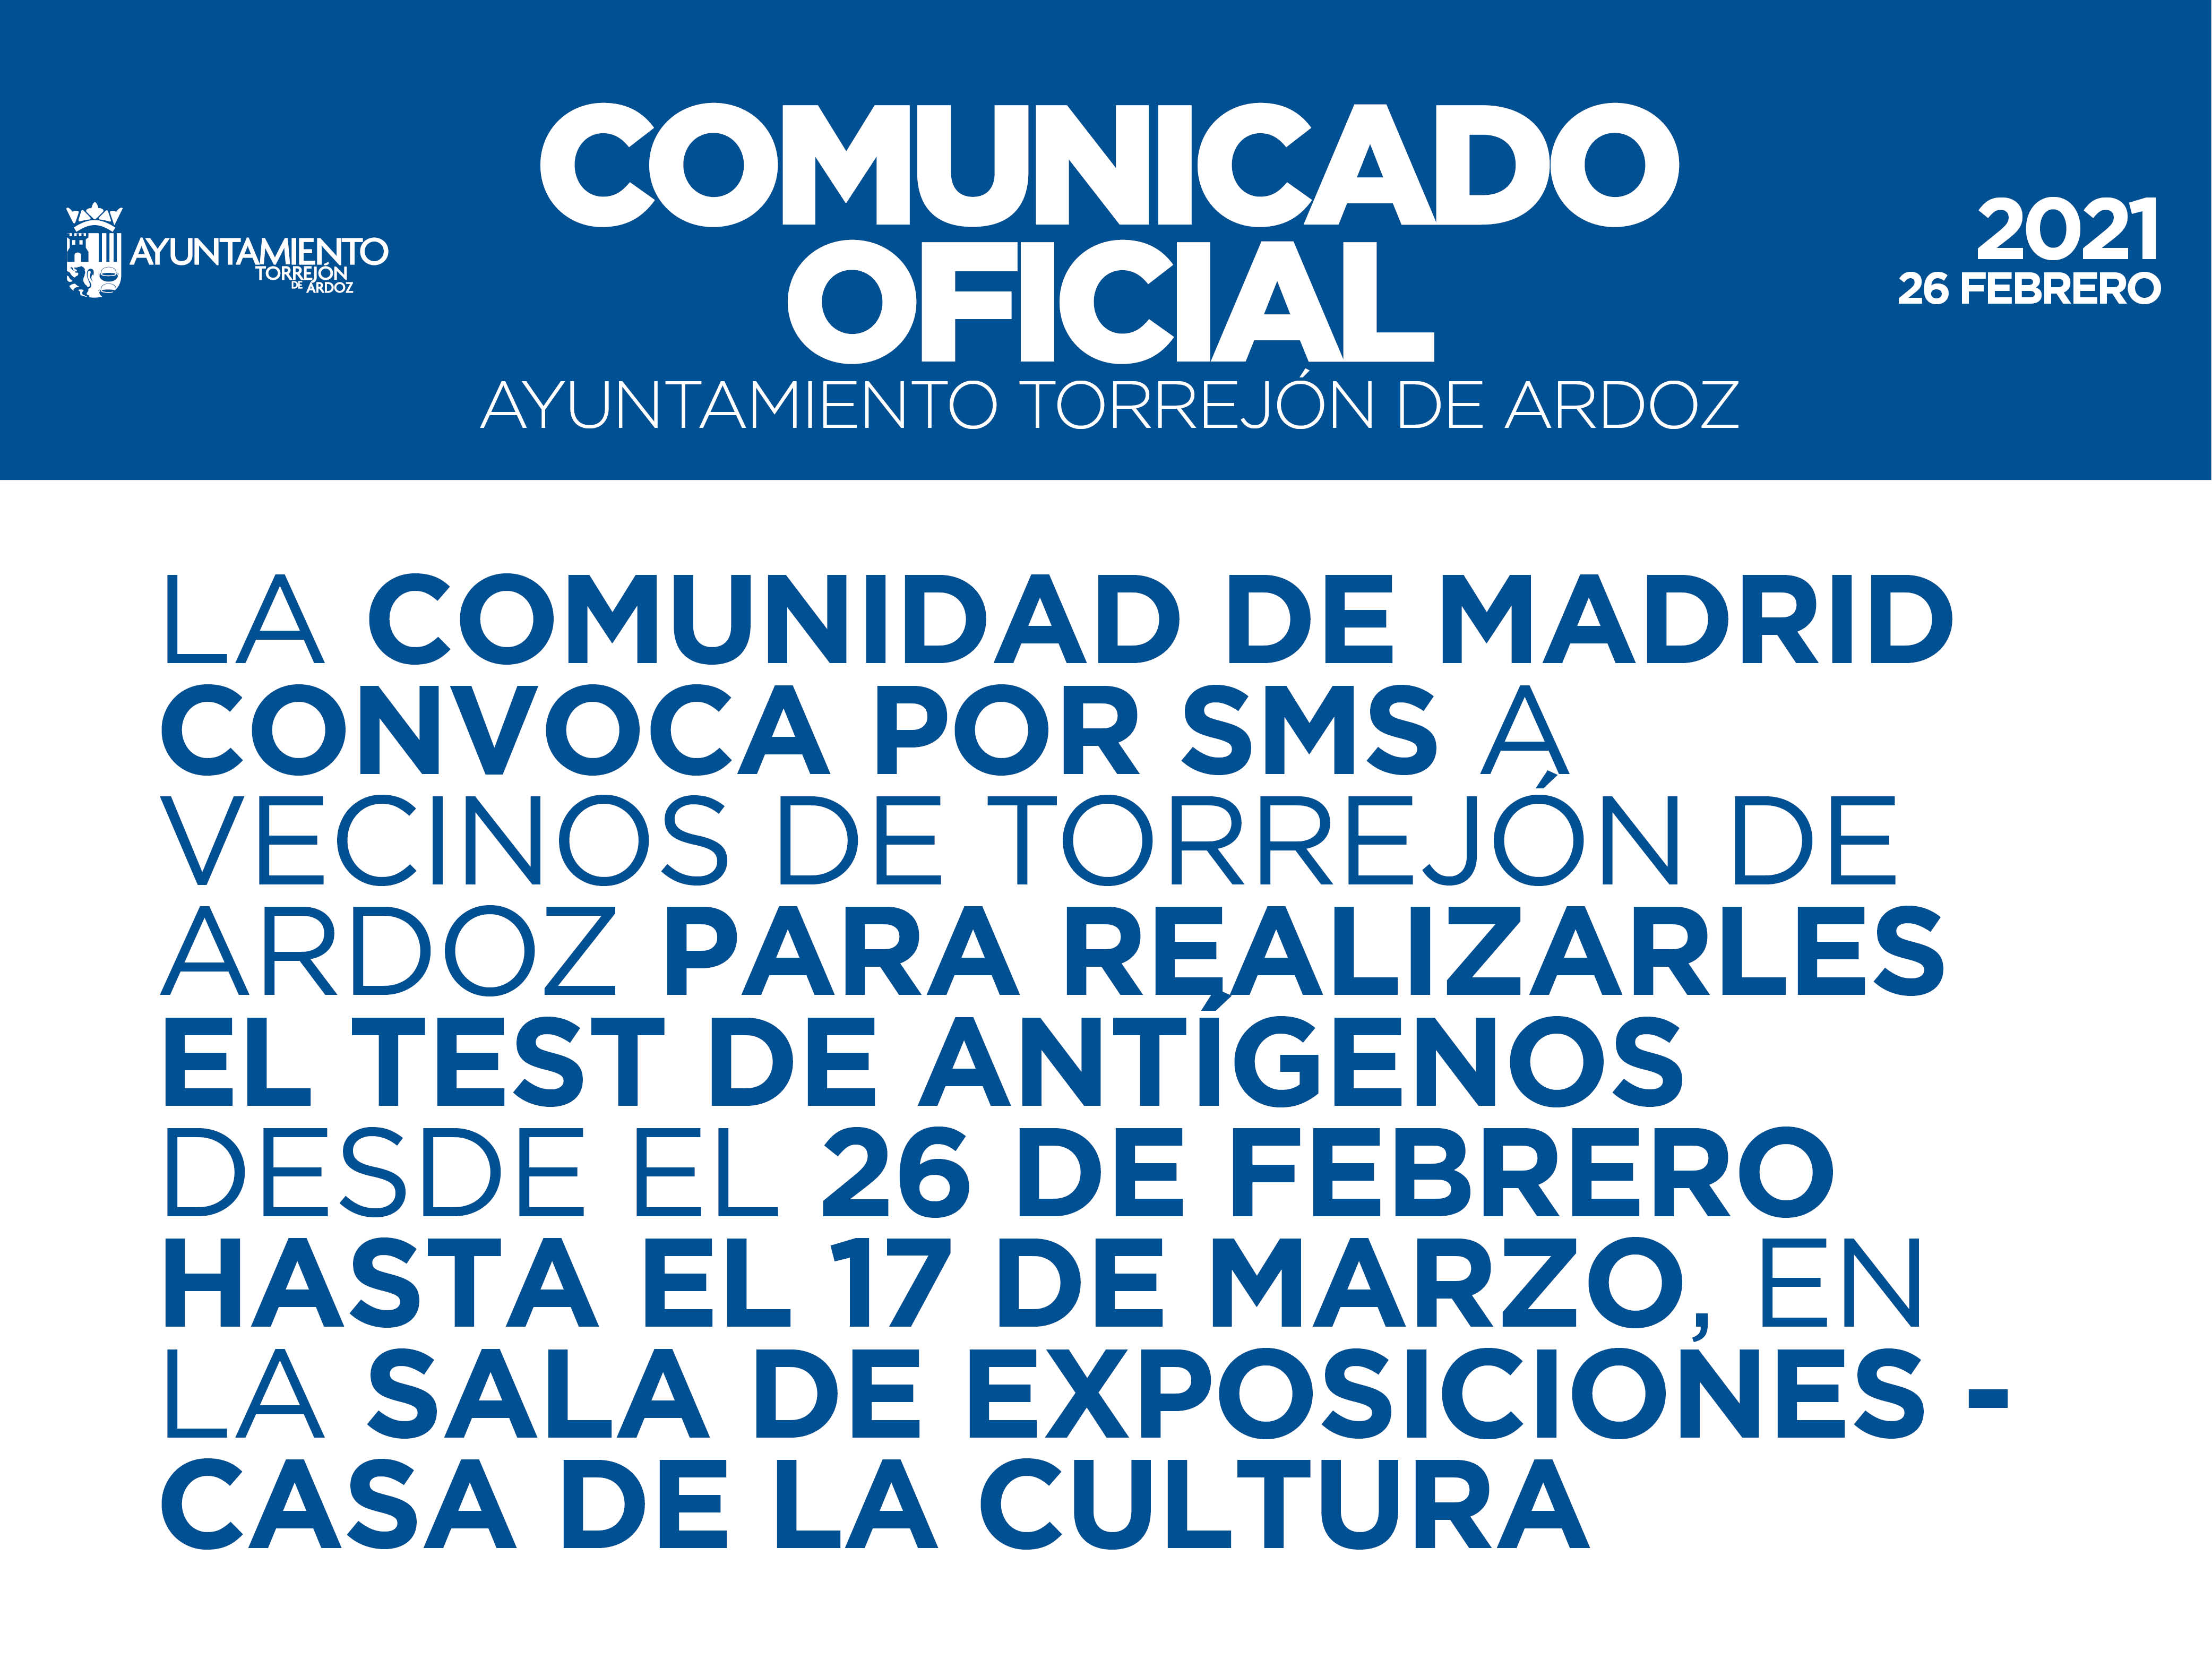 Último fin de semana para que los vecinos de Torrejón de Ardoz puedan realizarse test de antígenos en la Sala de Exposiciones - Casa de la Cultura convocados por la Comunidad de Madrid por SMS